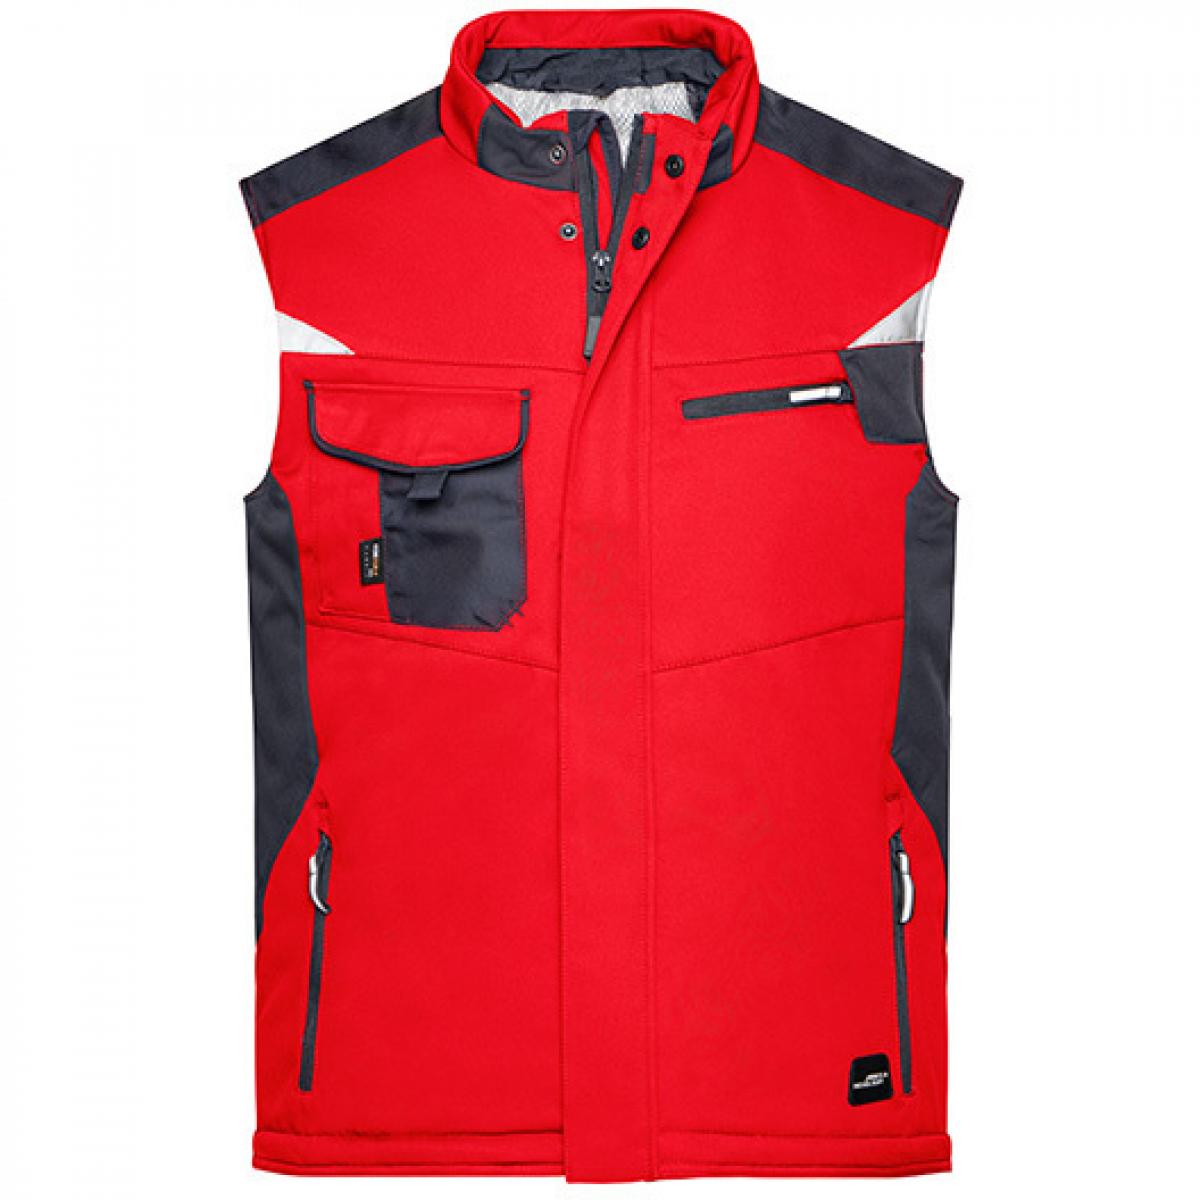 Hersteller: James+Nicholson Herstellernummer: JN825 Artikelbezeichnung: Herren Jacke, Craftsmen Softshell Vest -STRONG- Farbe: Red/Black